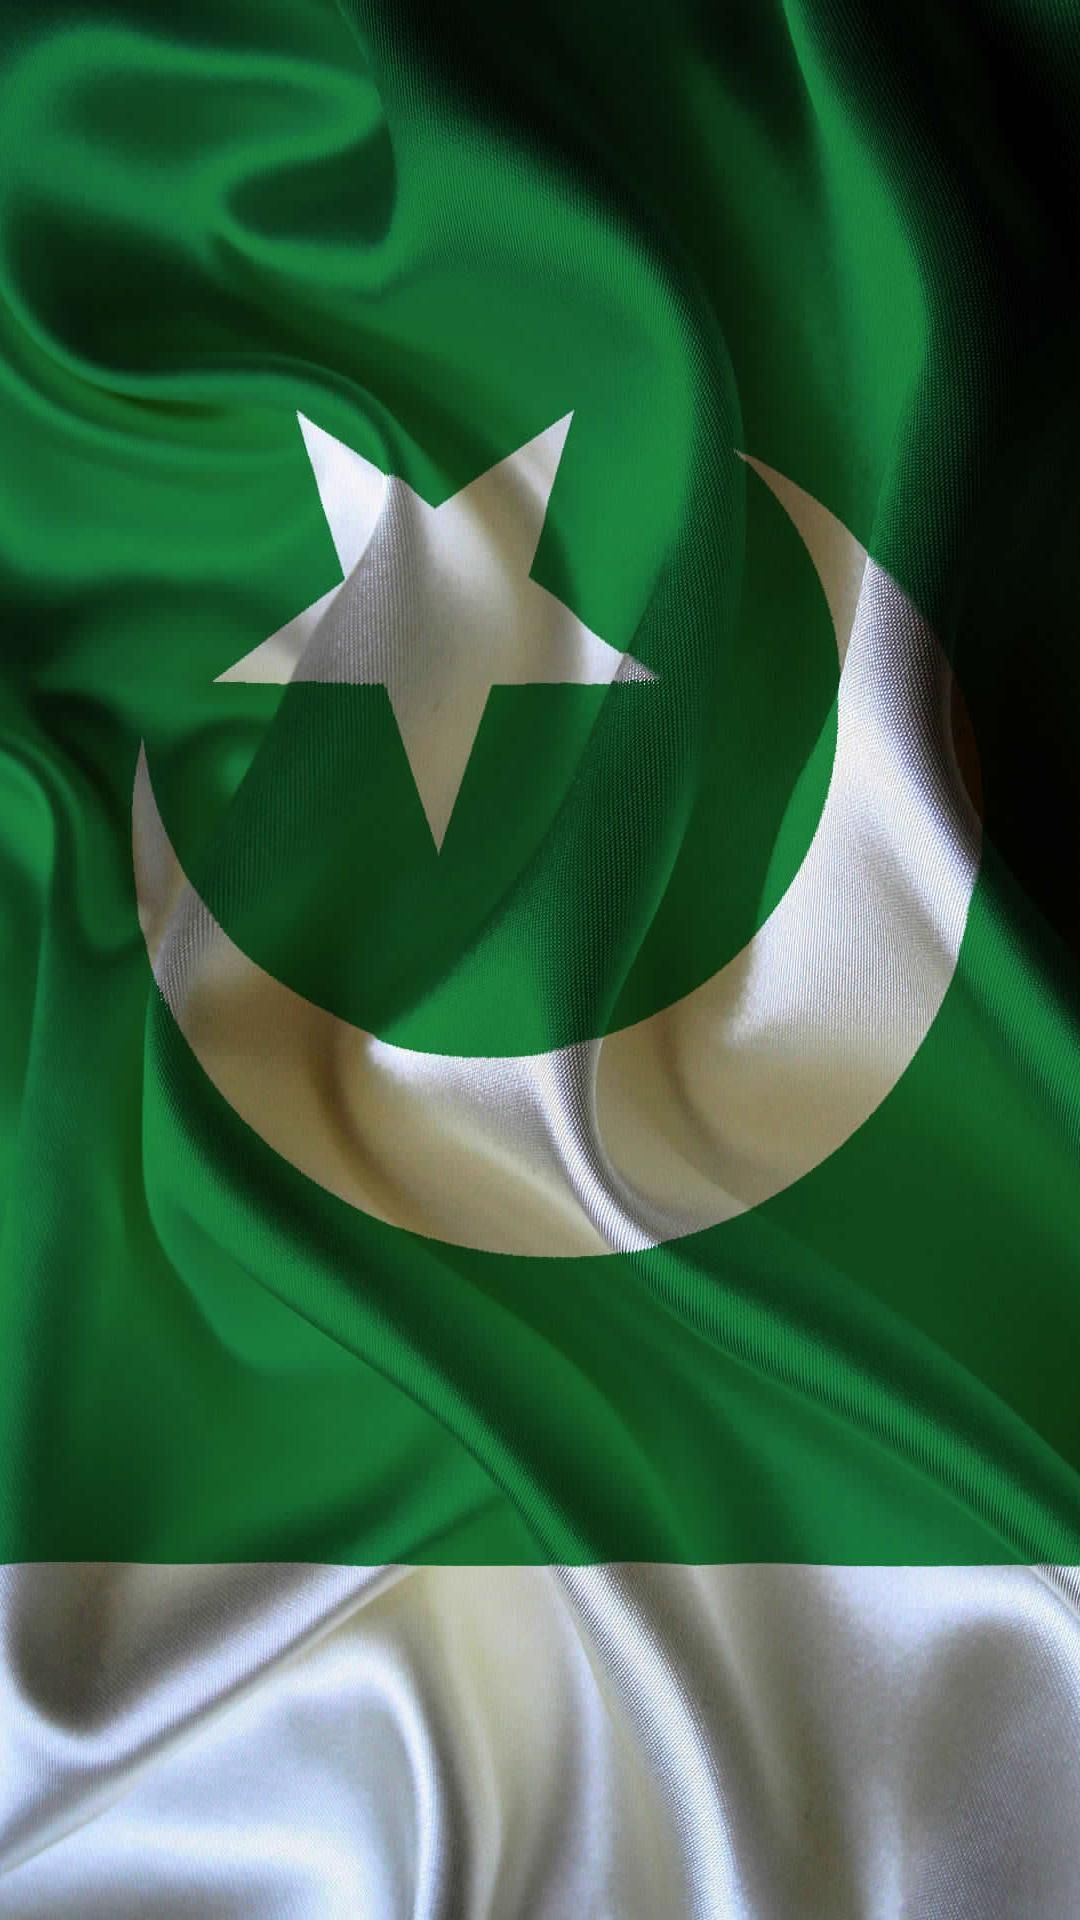 توكلت على الله. Pakistan flag wallpaper, Pakistan flag, Pakistani flag